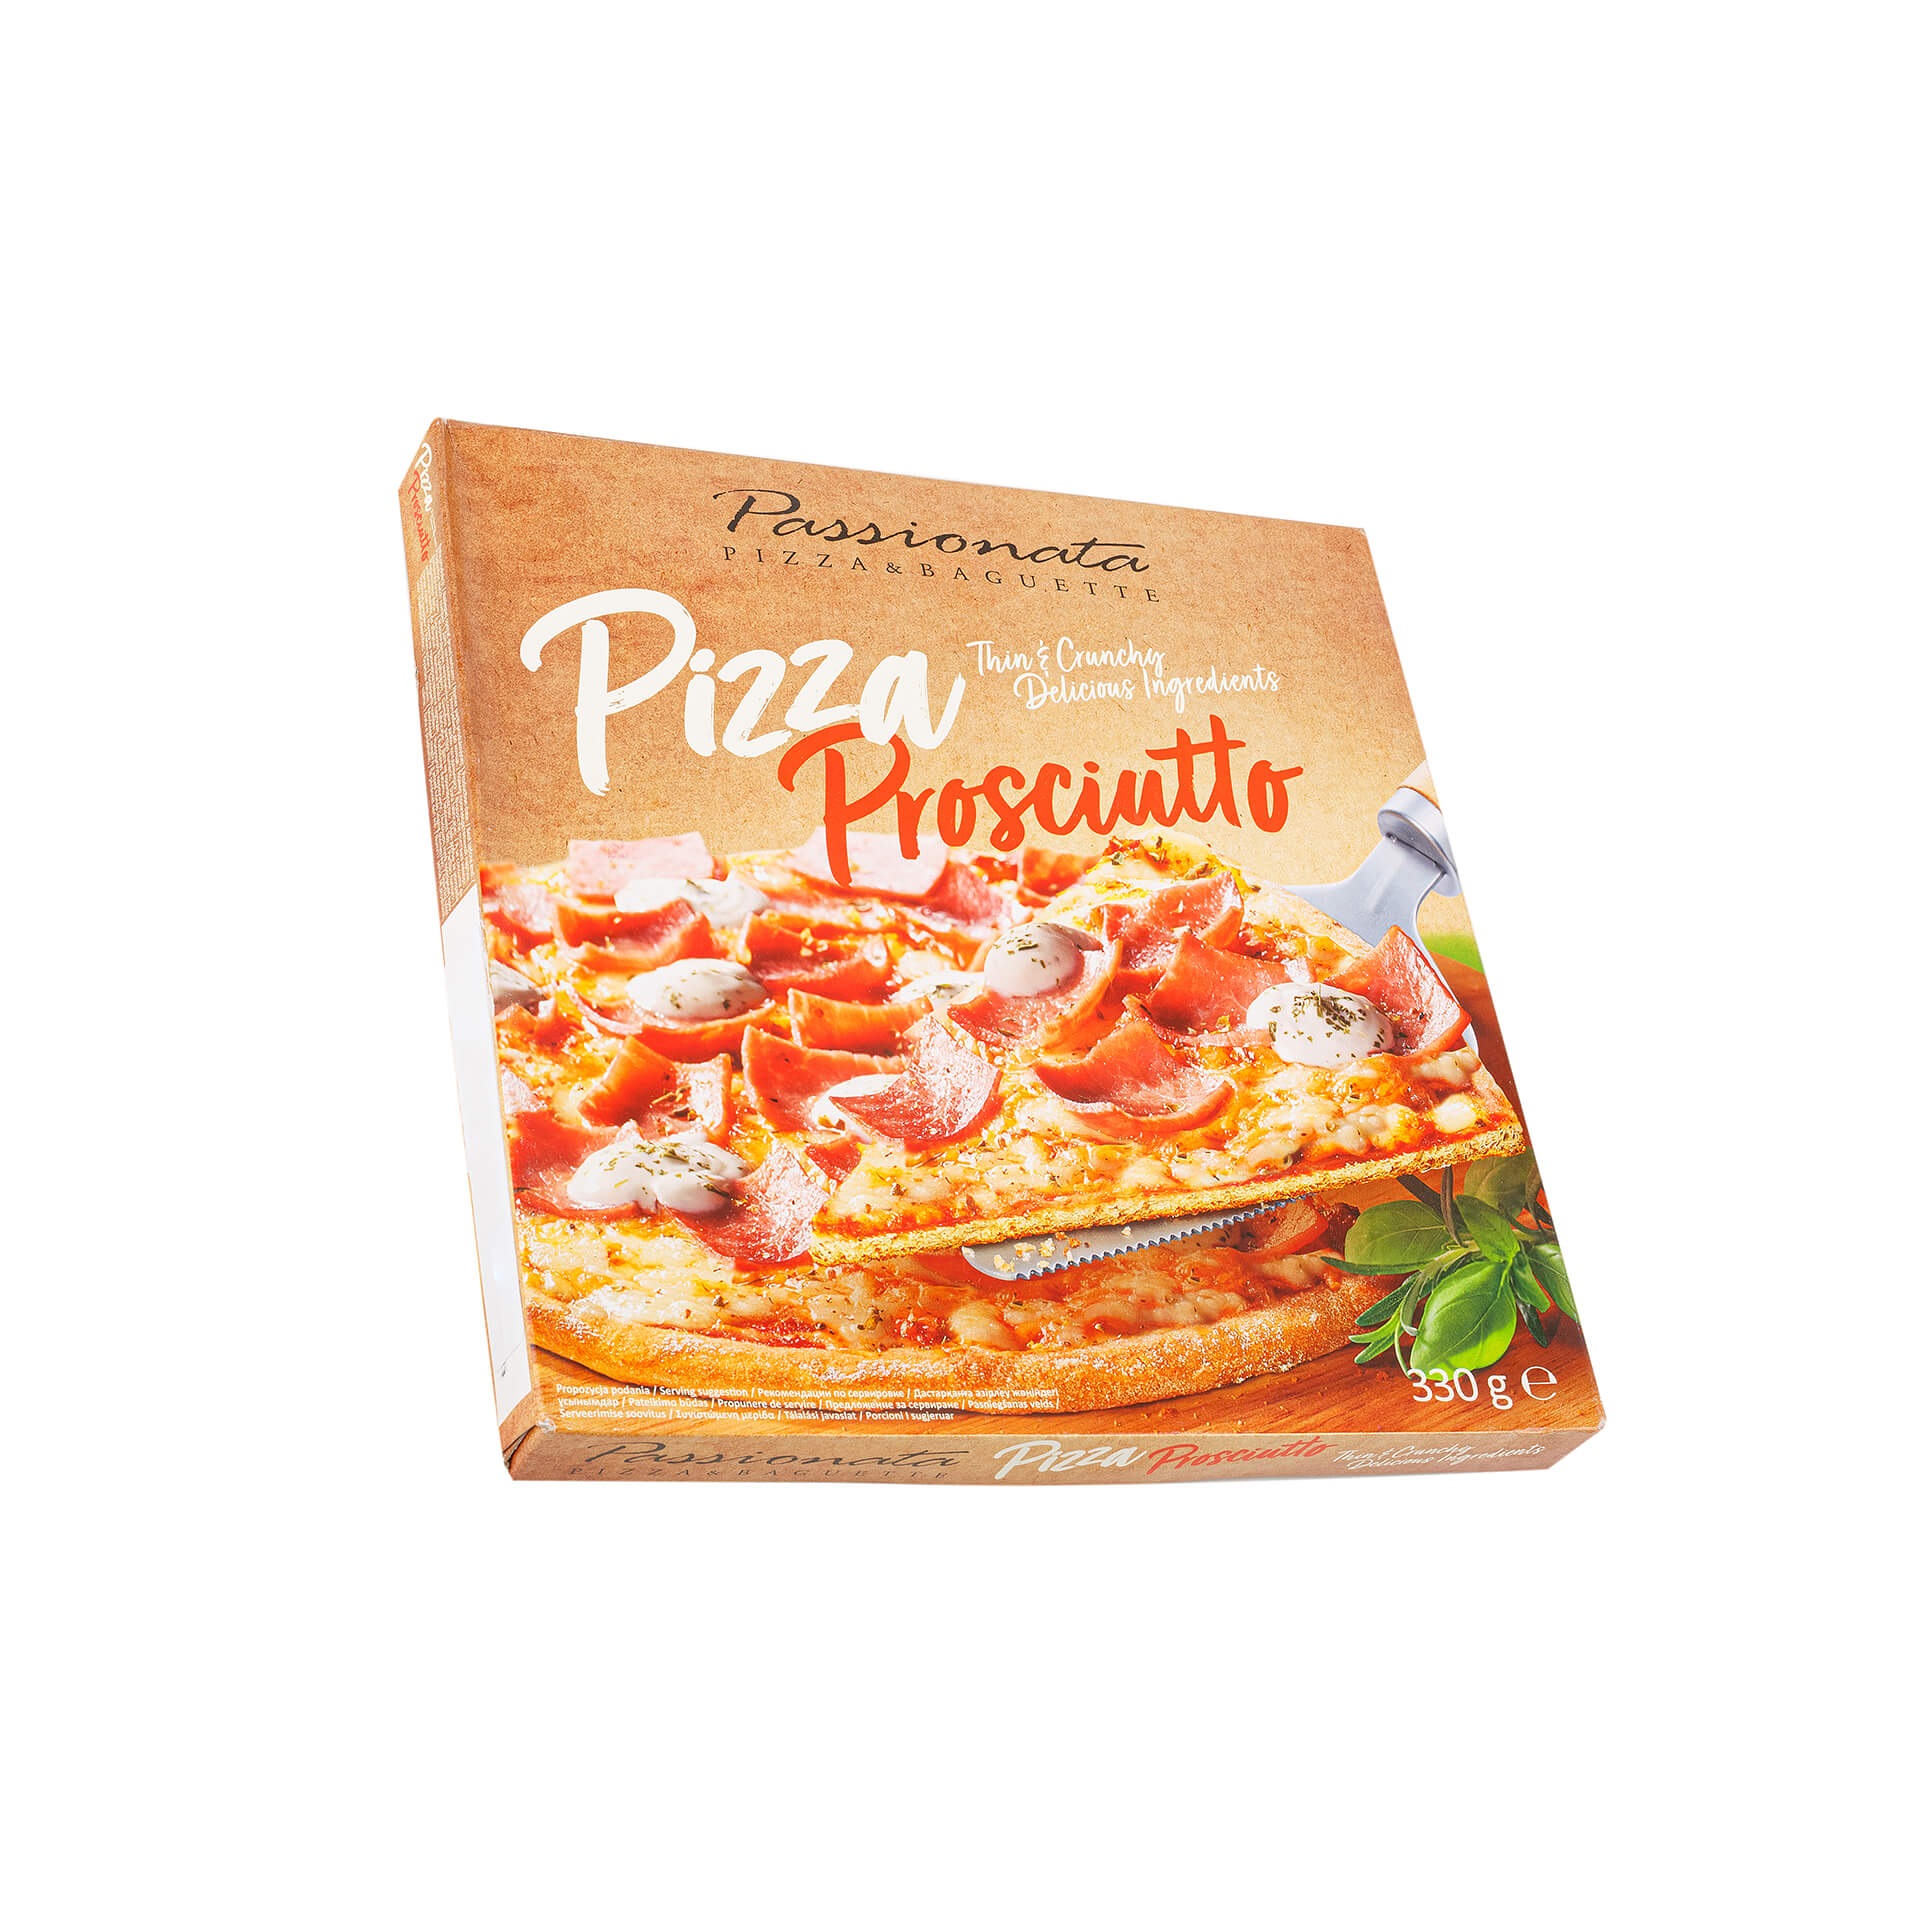 Пицца "Прошутто" замороженный полуфабрикат Passionata 330 г 8542LED, общий вид, купить оптом с доставкой по москве и московской области, недорого, низкая цена